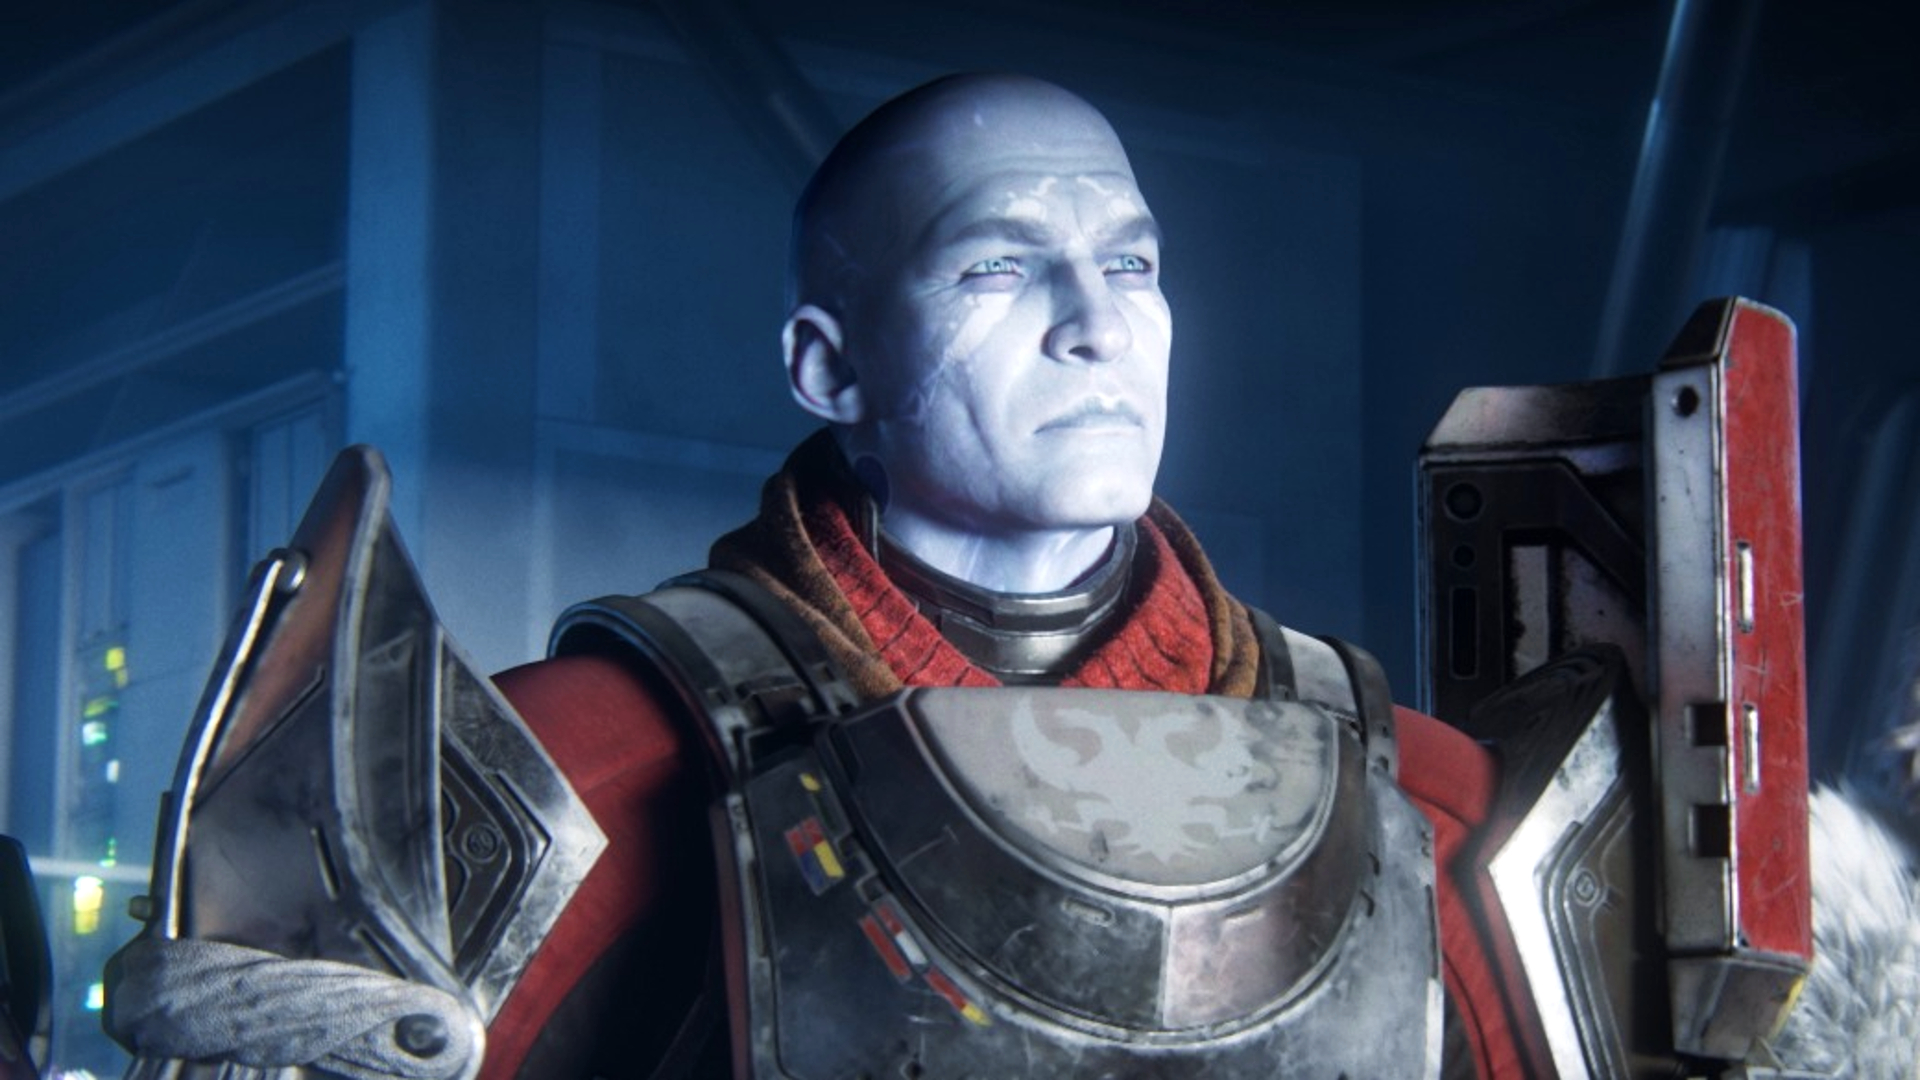 Chỉ huy Zavala, một người đàn ông từ Destiny 2, tự hào về áo giáp bạc và màu đỏ